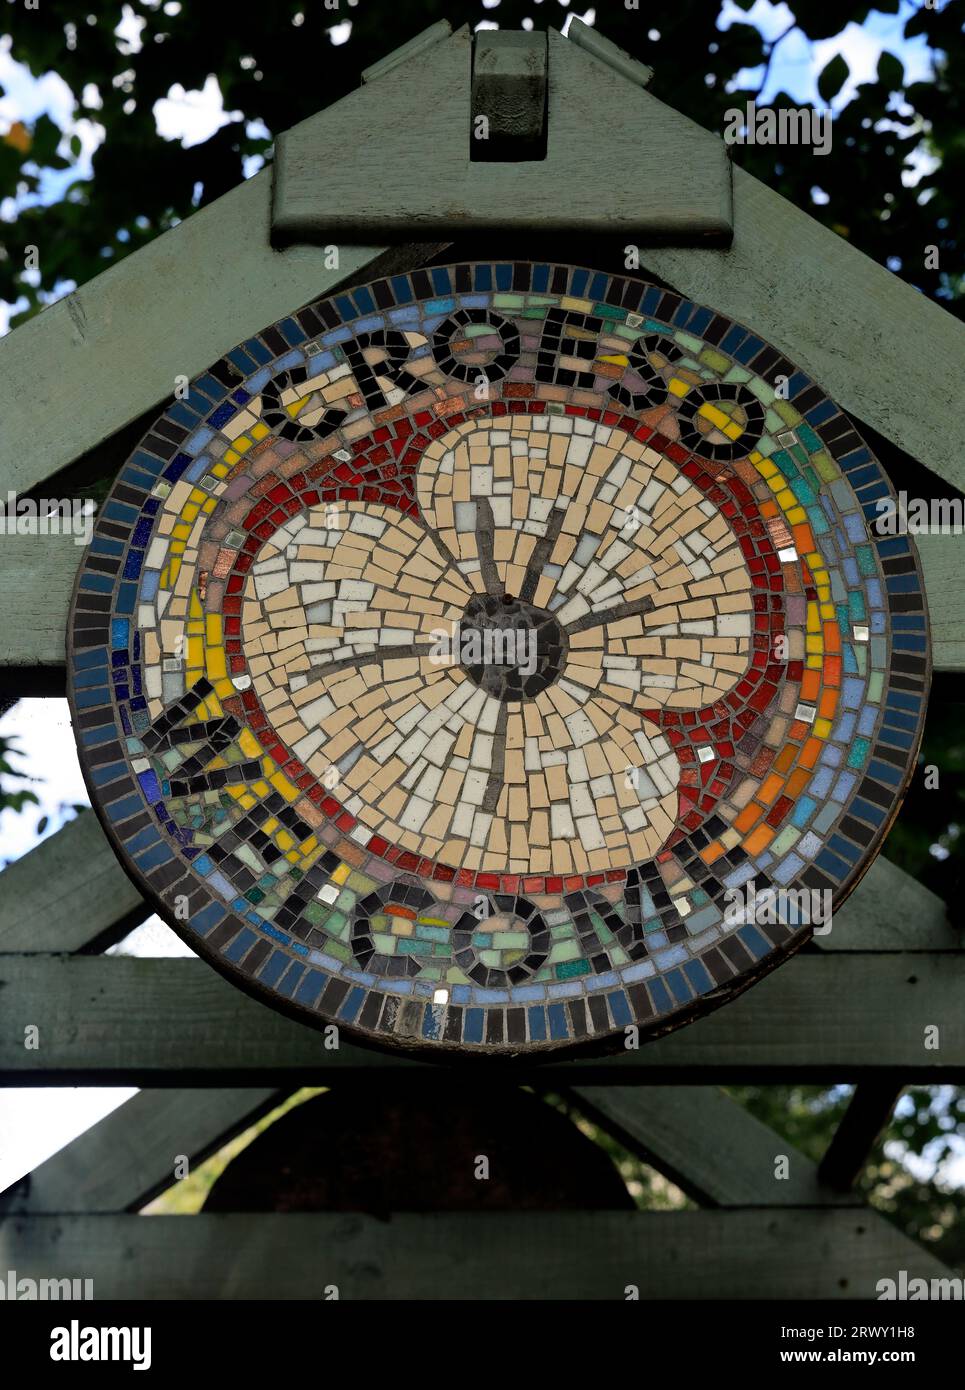 Croeso - Welcome - dekorative zweisprachige Mosaikplakette im Stadtzentrum von Cardiff. September 2023 Stockfoto